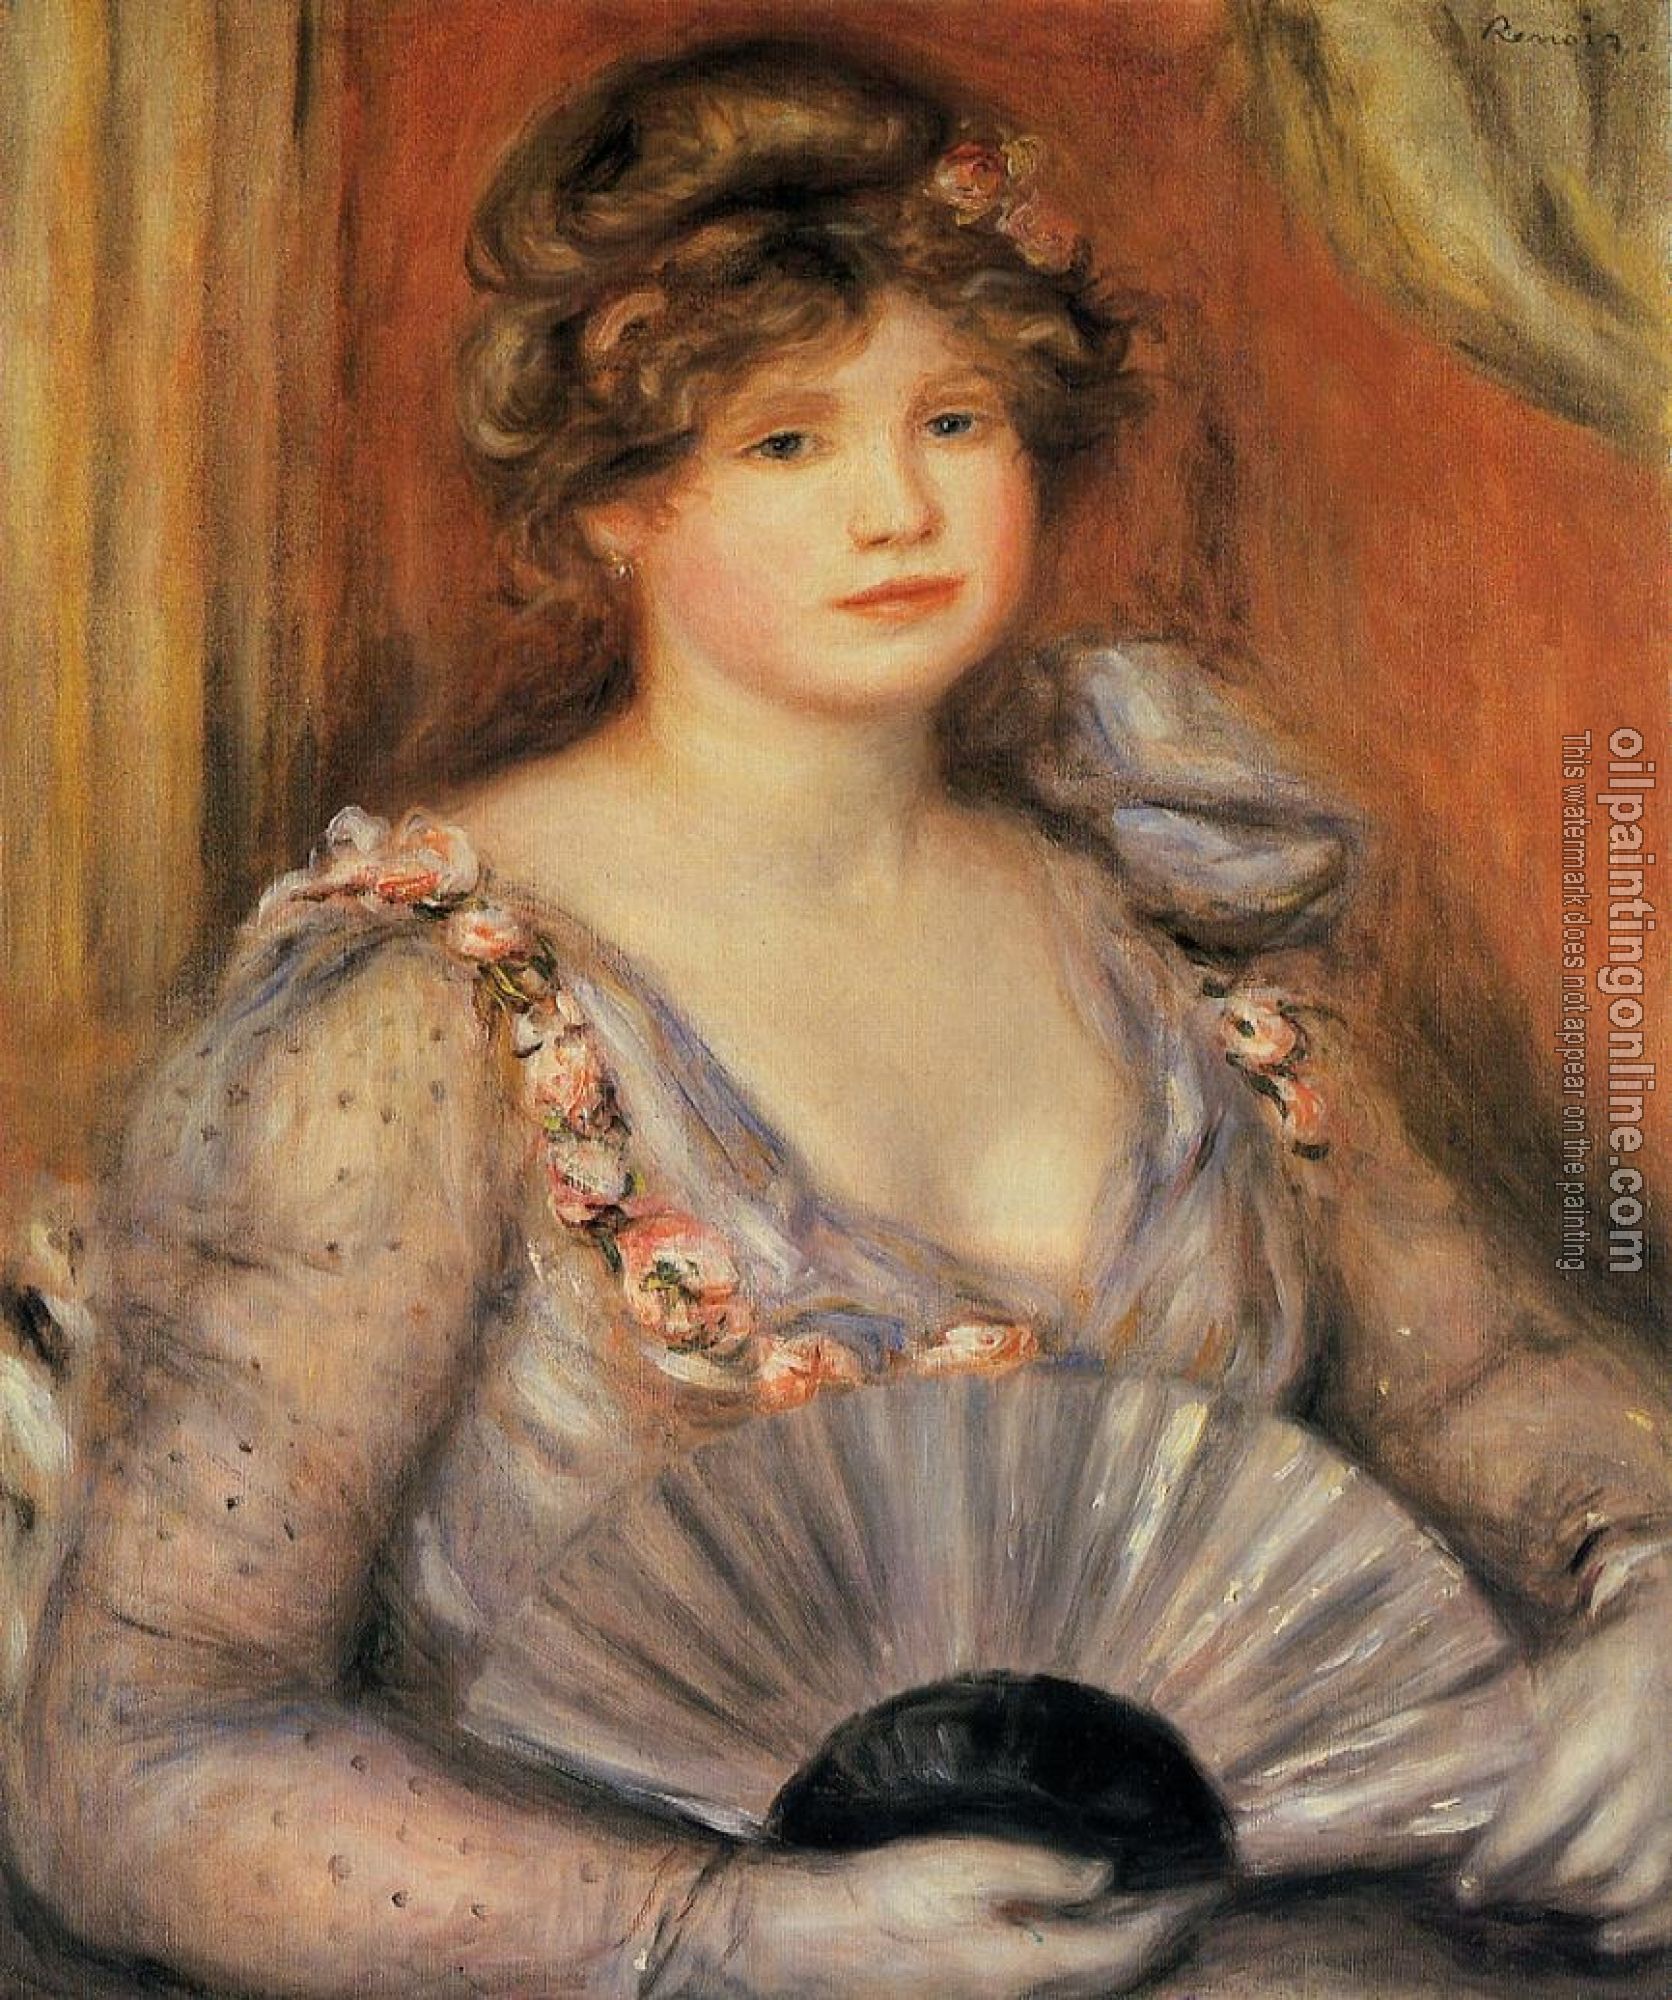 Renoir, Pierre Auguste - Woman with a Fan